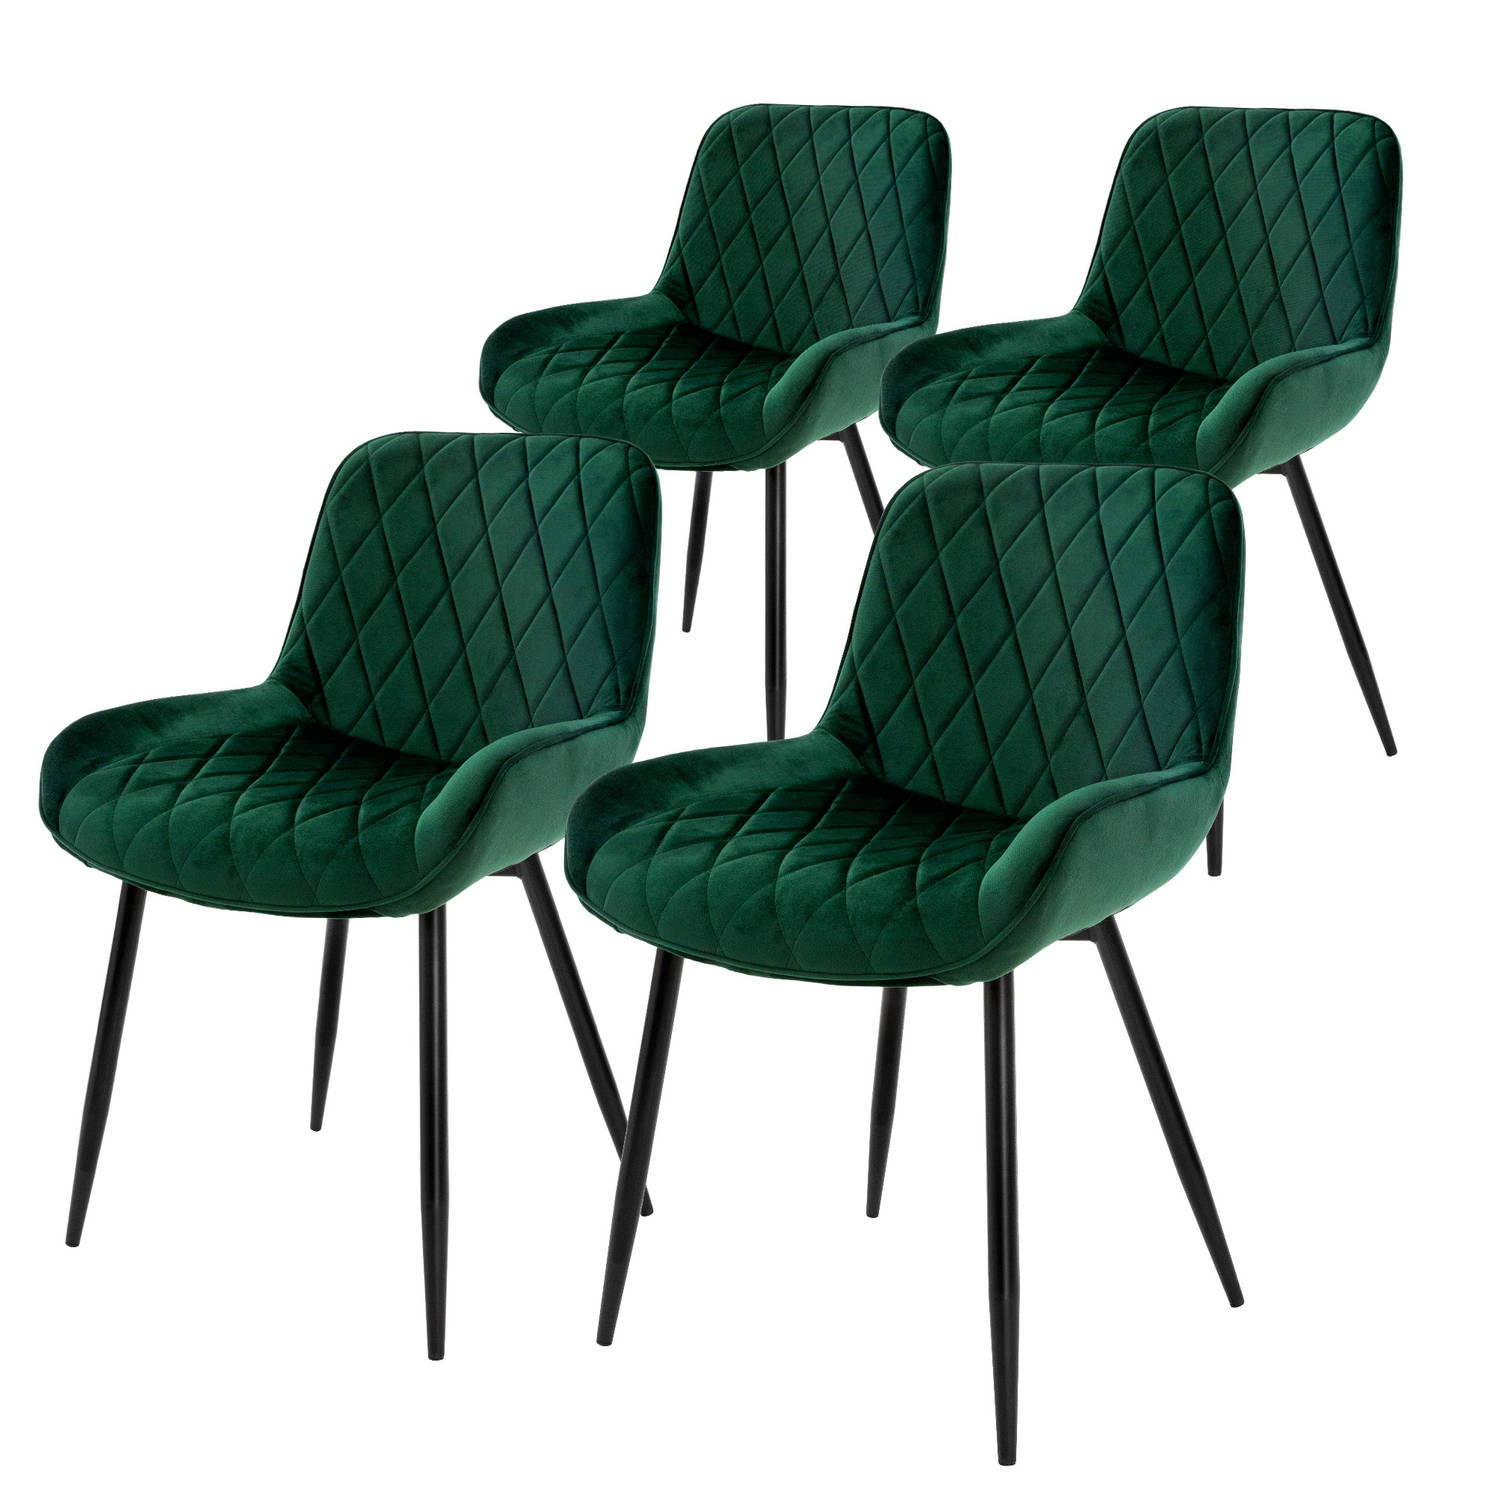 ML-Design Set van 4 eetkamerstoelen Eetkamerstoel met rugleuning en armleuningen, donkergroen, fluwelen zitting, metalen poten, keukenstoelen Woonkamerstoelen Gestoffeerde stoelen